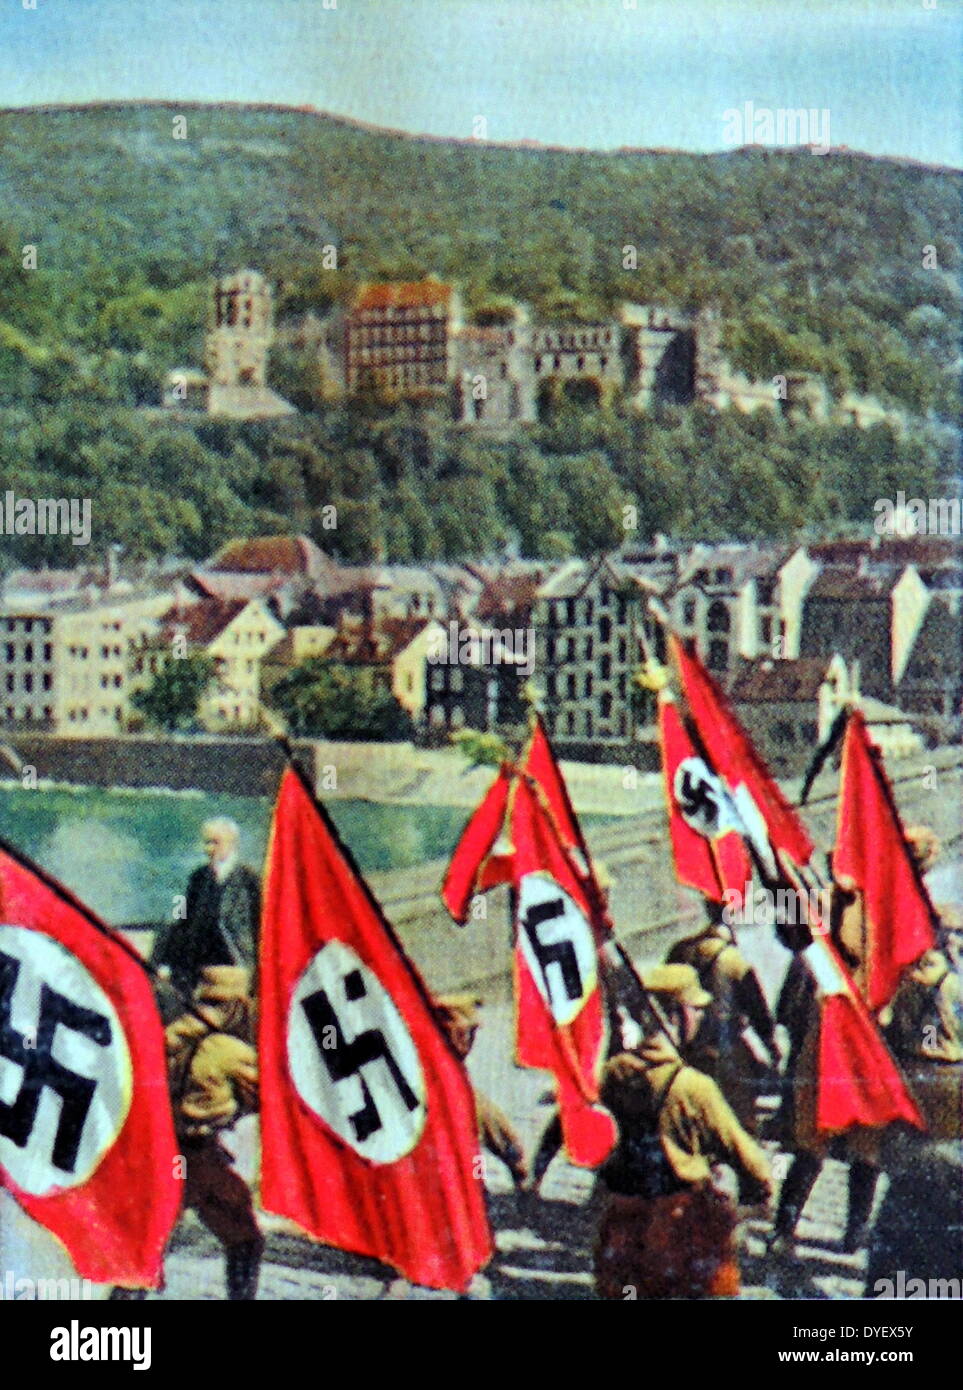 Nazi swastika flags are paraded into Heidelberg, Germany 1933 Stock Photo